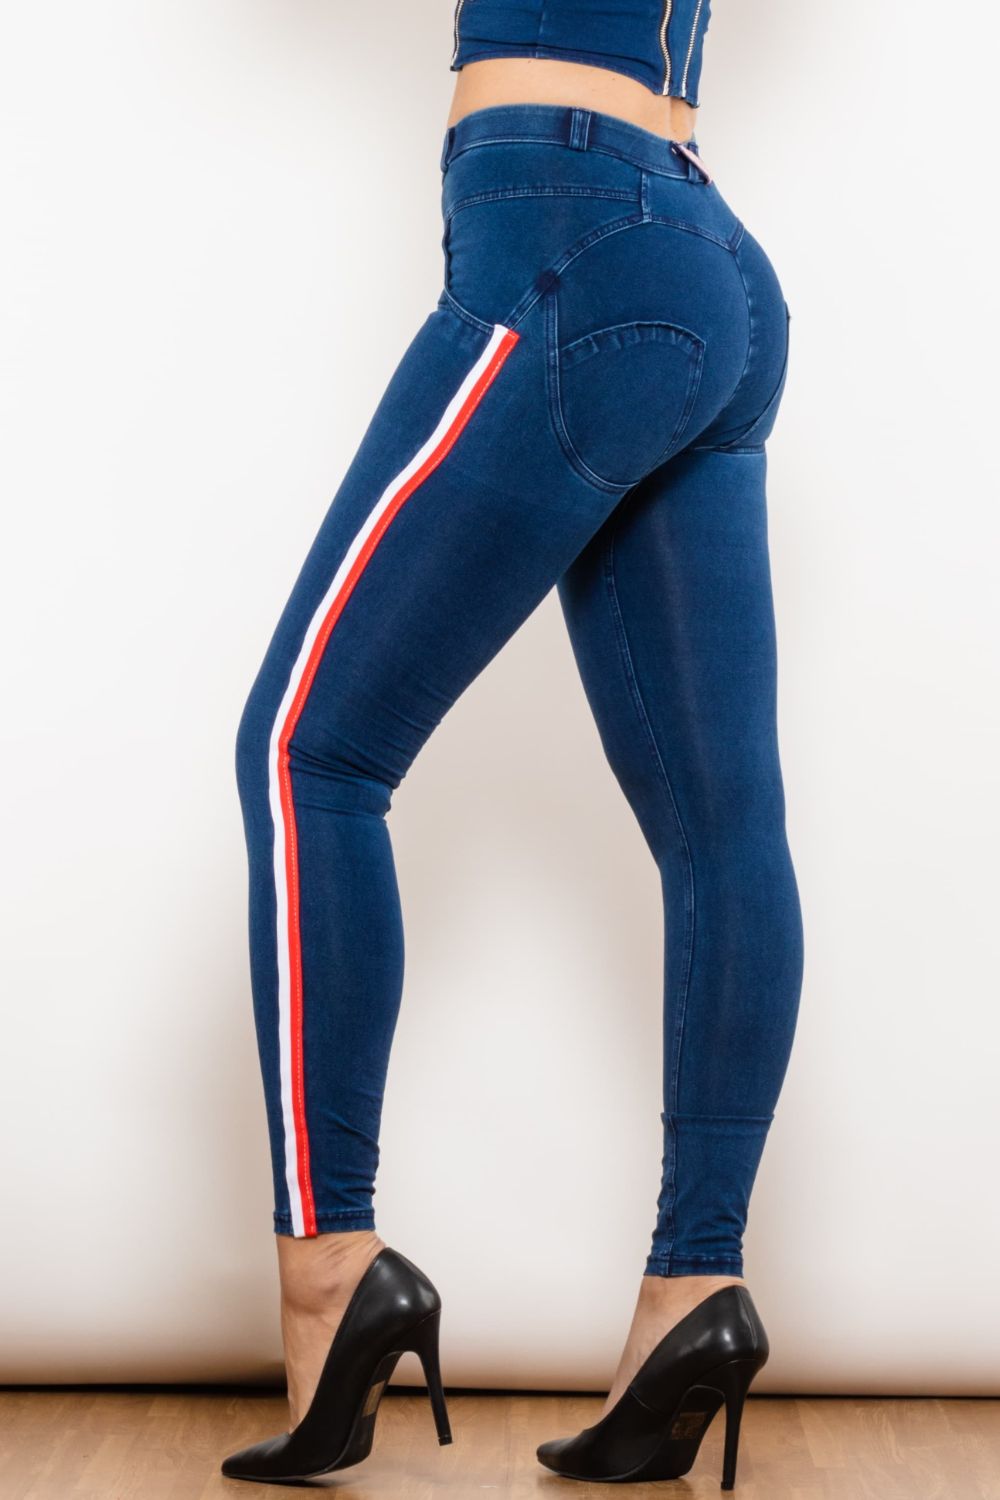 LLC Flyclothing – Side Skinny Stripe Jeans